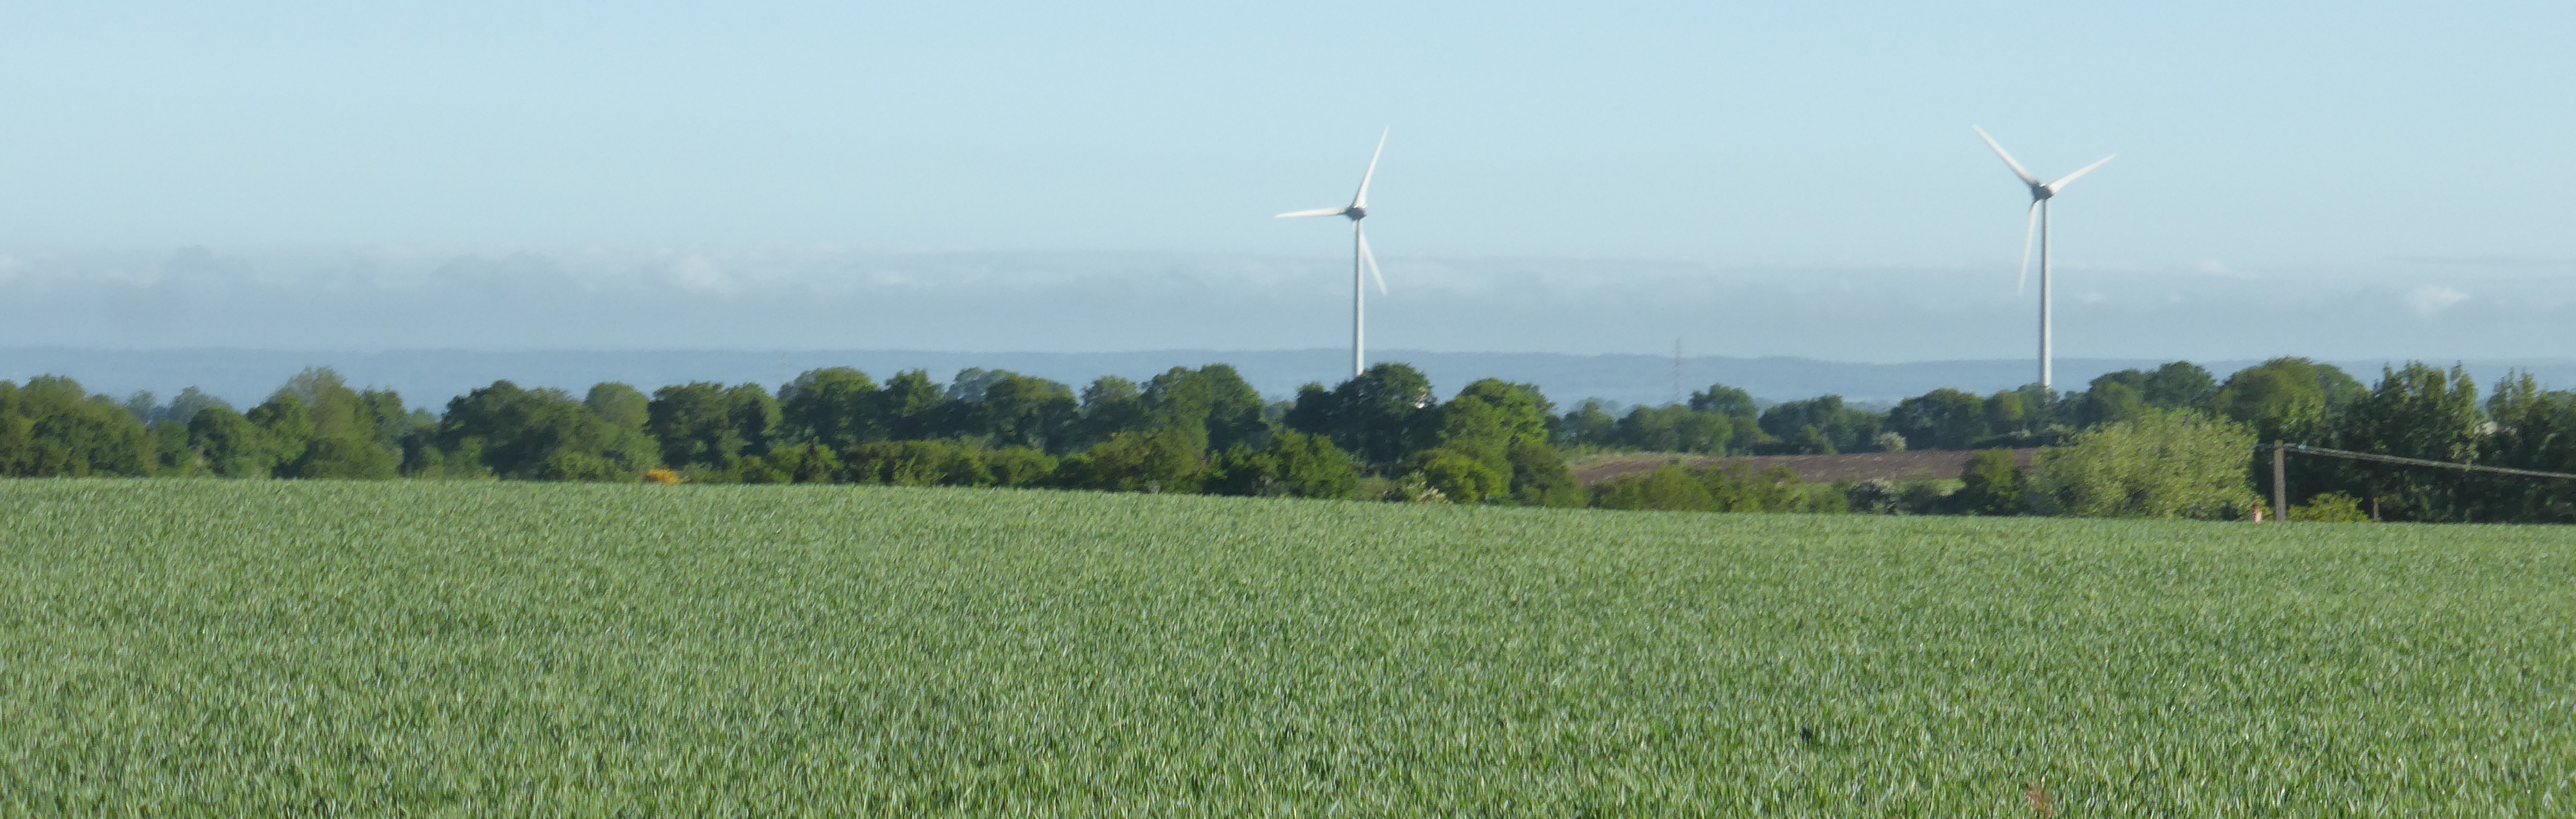 La présence d'éoliennes créée de nouveaux repères visuels dans le paysage (Lassay-les-Châteaux – 2015) en grand format (nouvelle fenêtre)